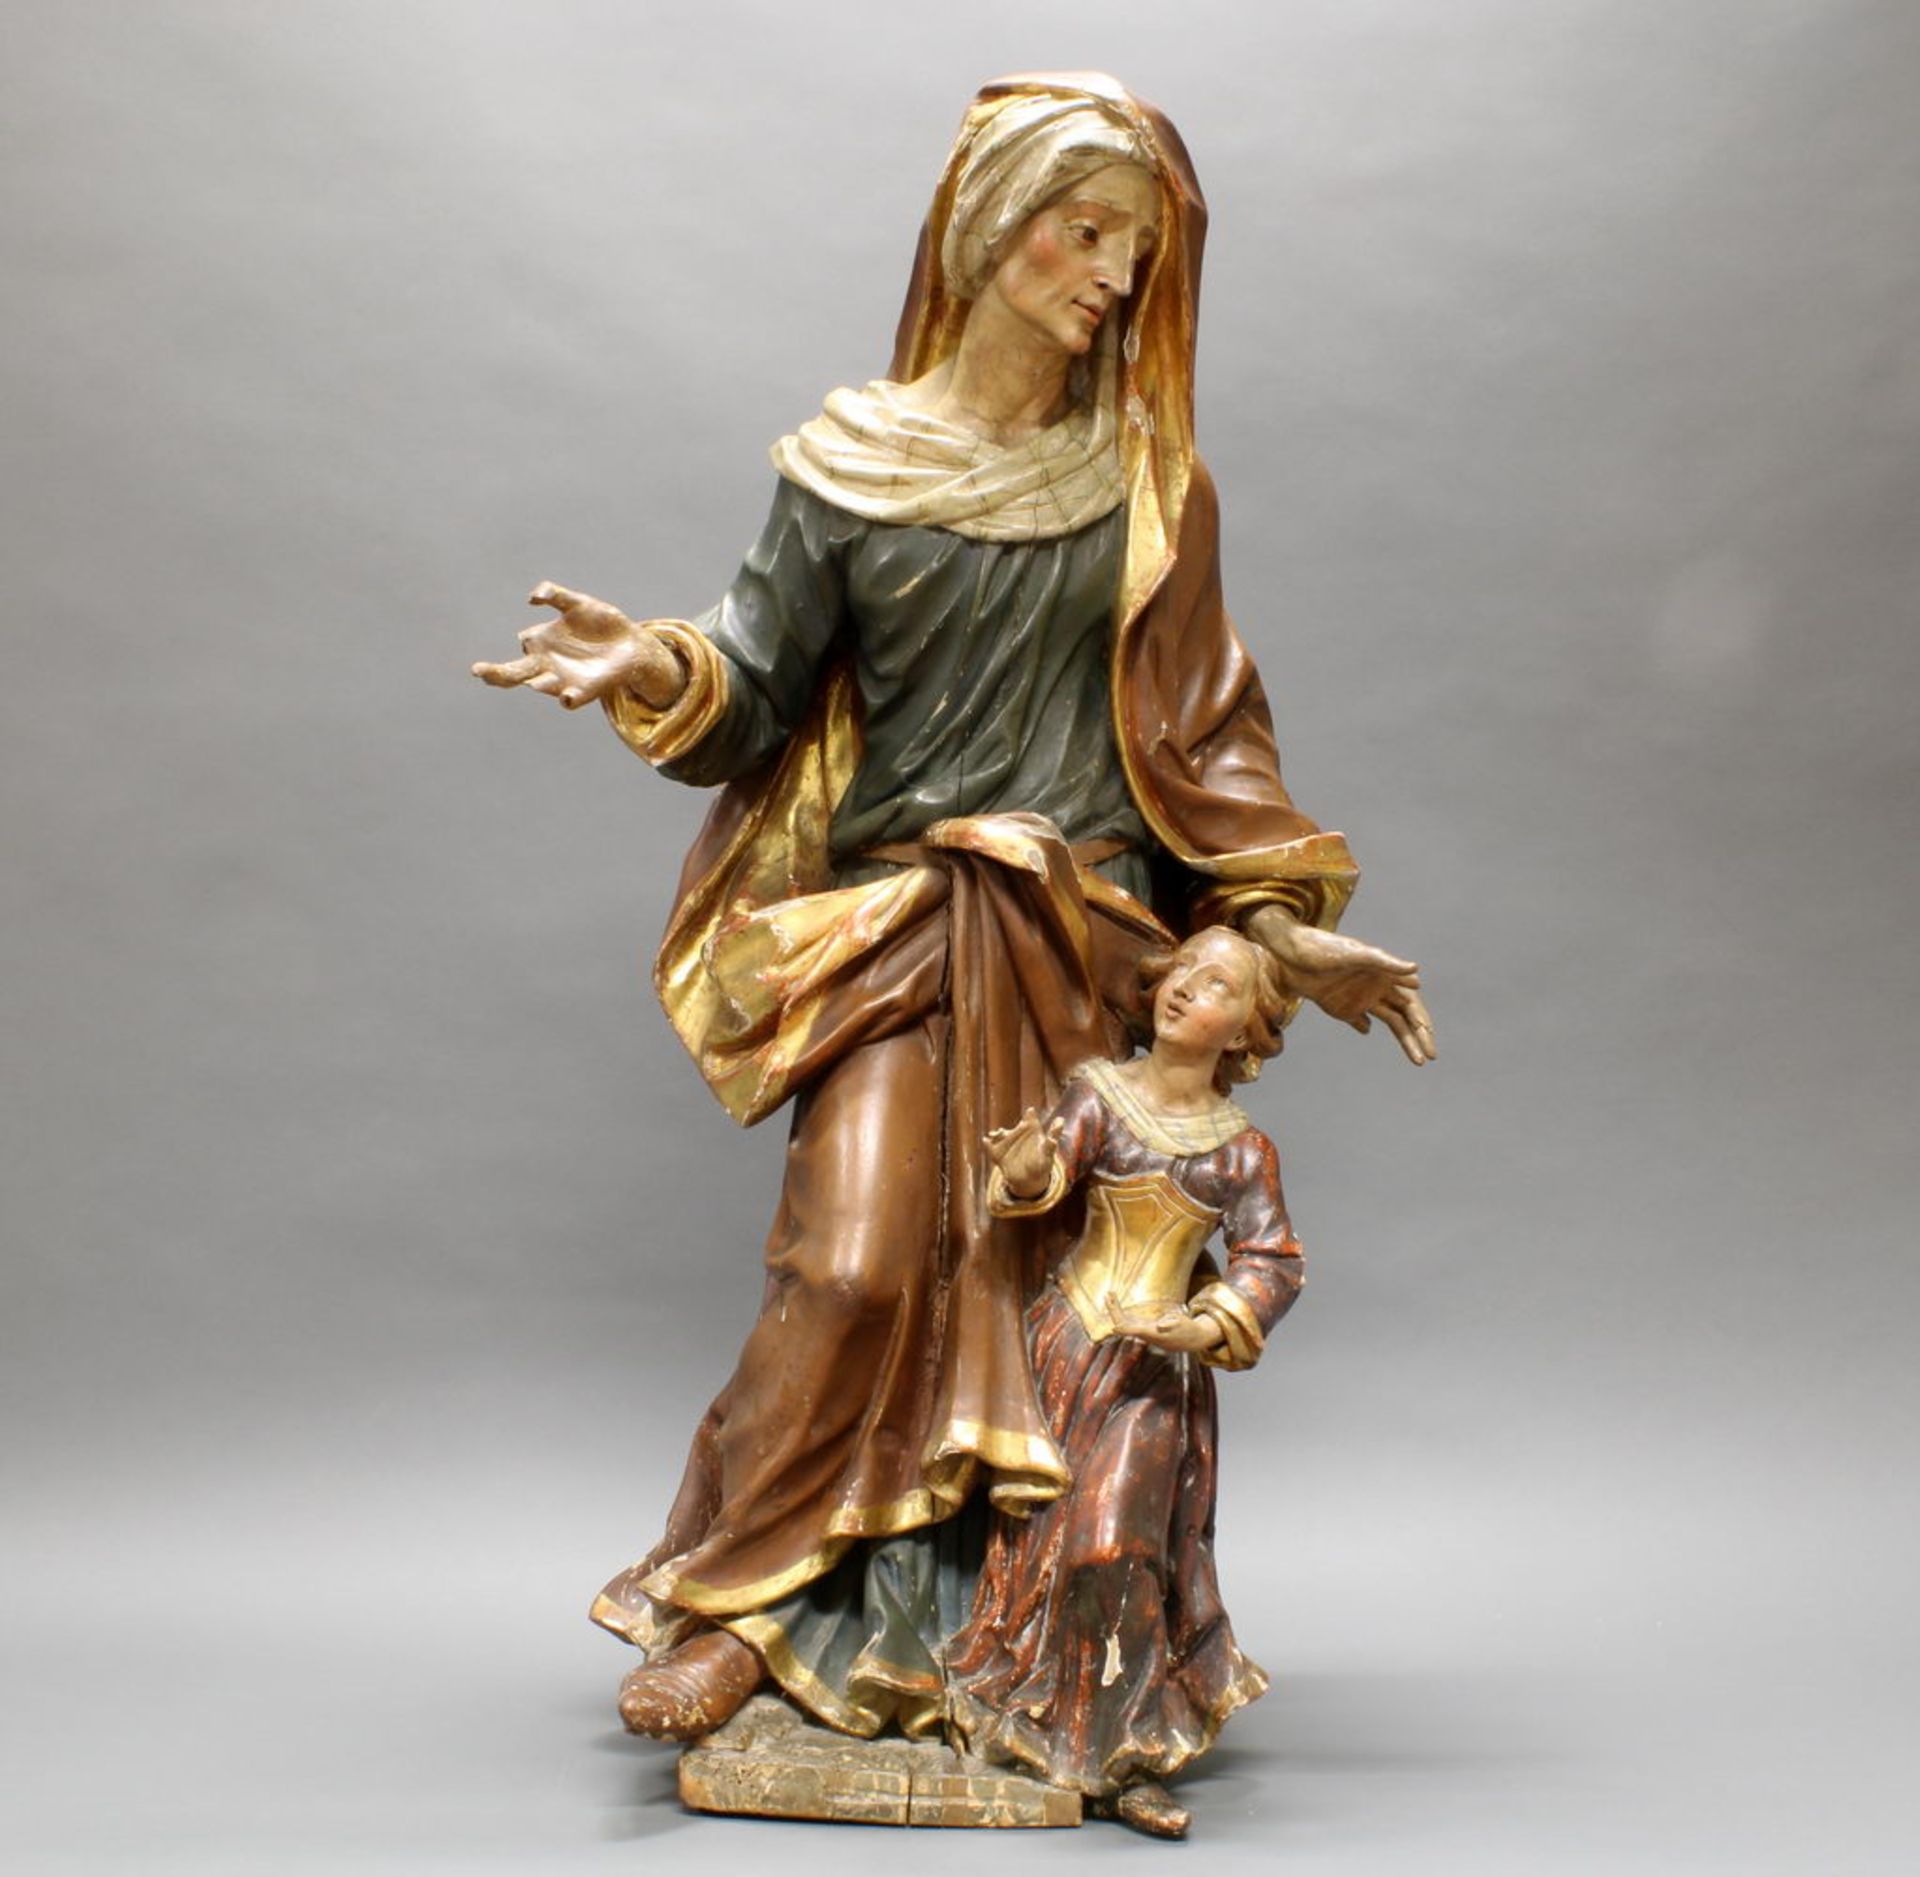 Skulptur, Holz geschnitzt, "Anna, Maria das Lesen lehrend", Italien, 18. Jh., 114 cm hoch, teils or